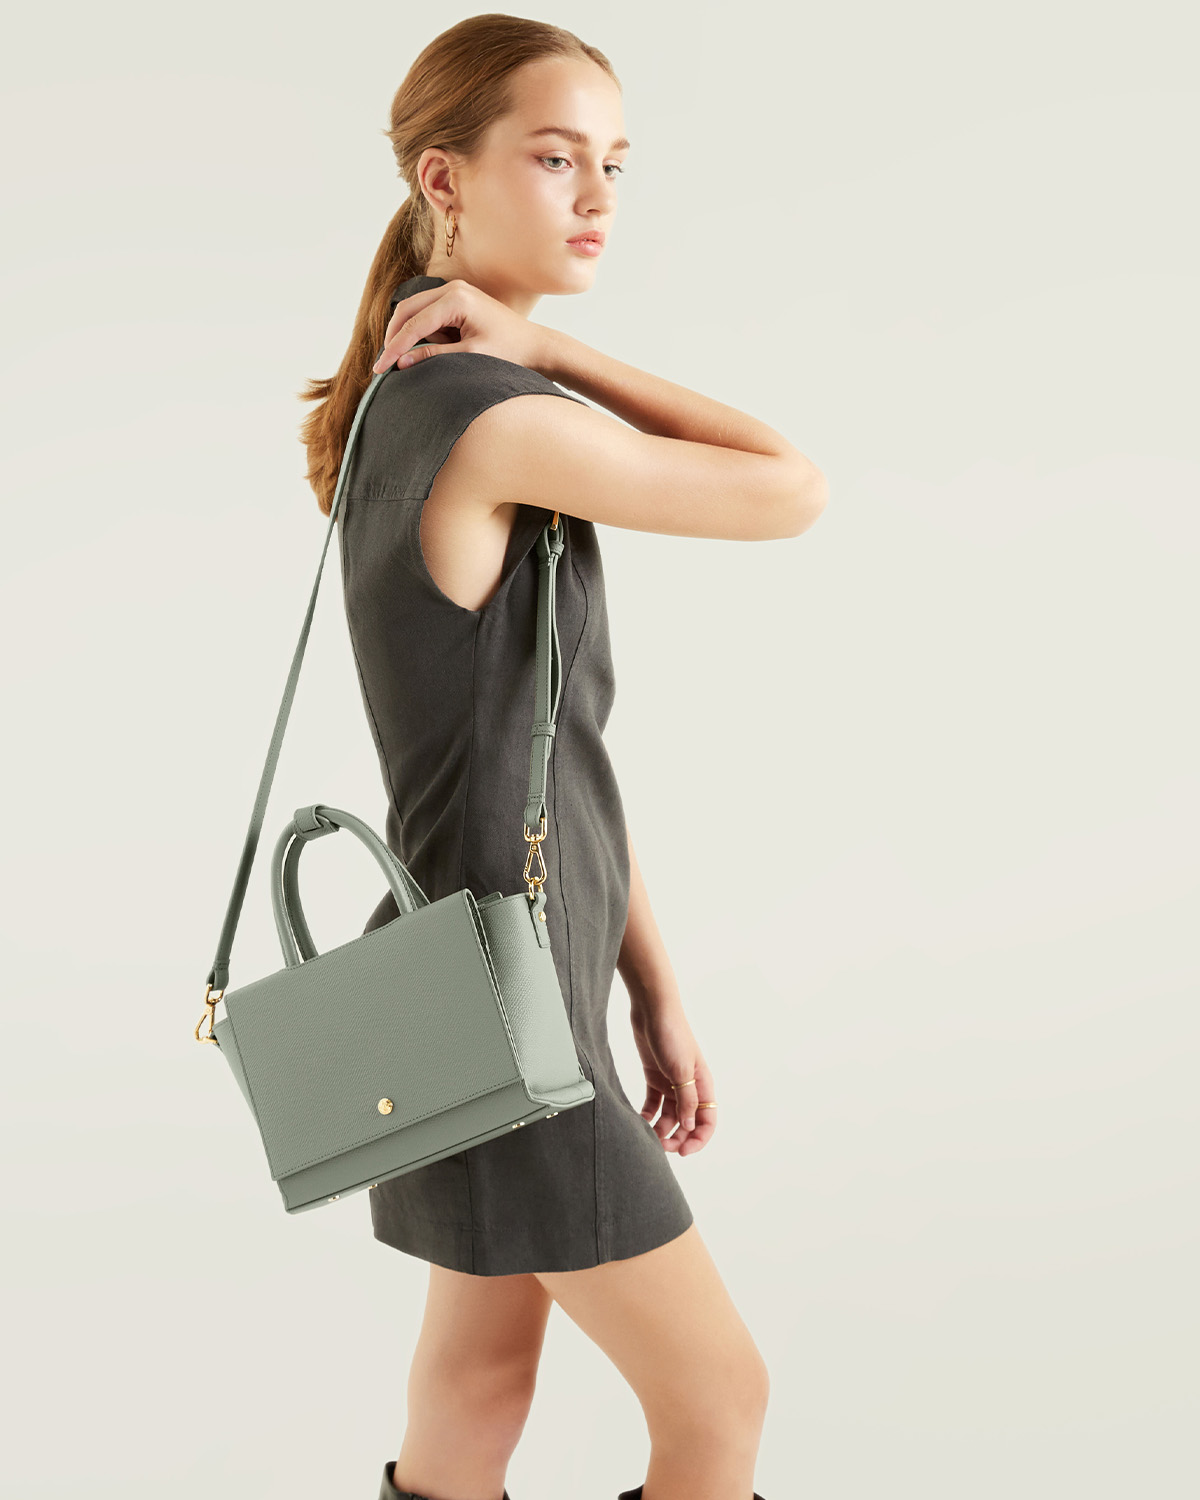 กระเป๋าถือหนังแท้ VERA Heidi Leather Handbag, ไซส์ 25 สี Sage